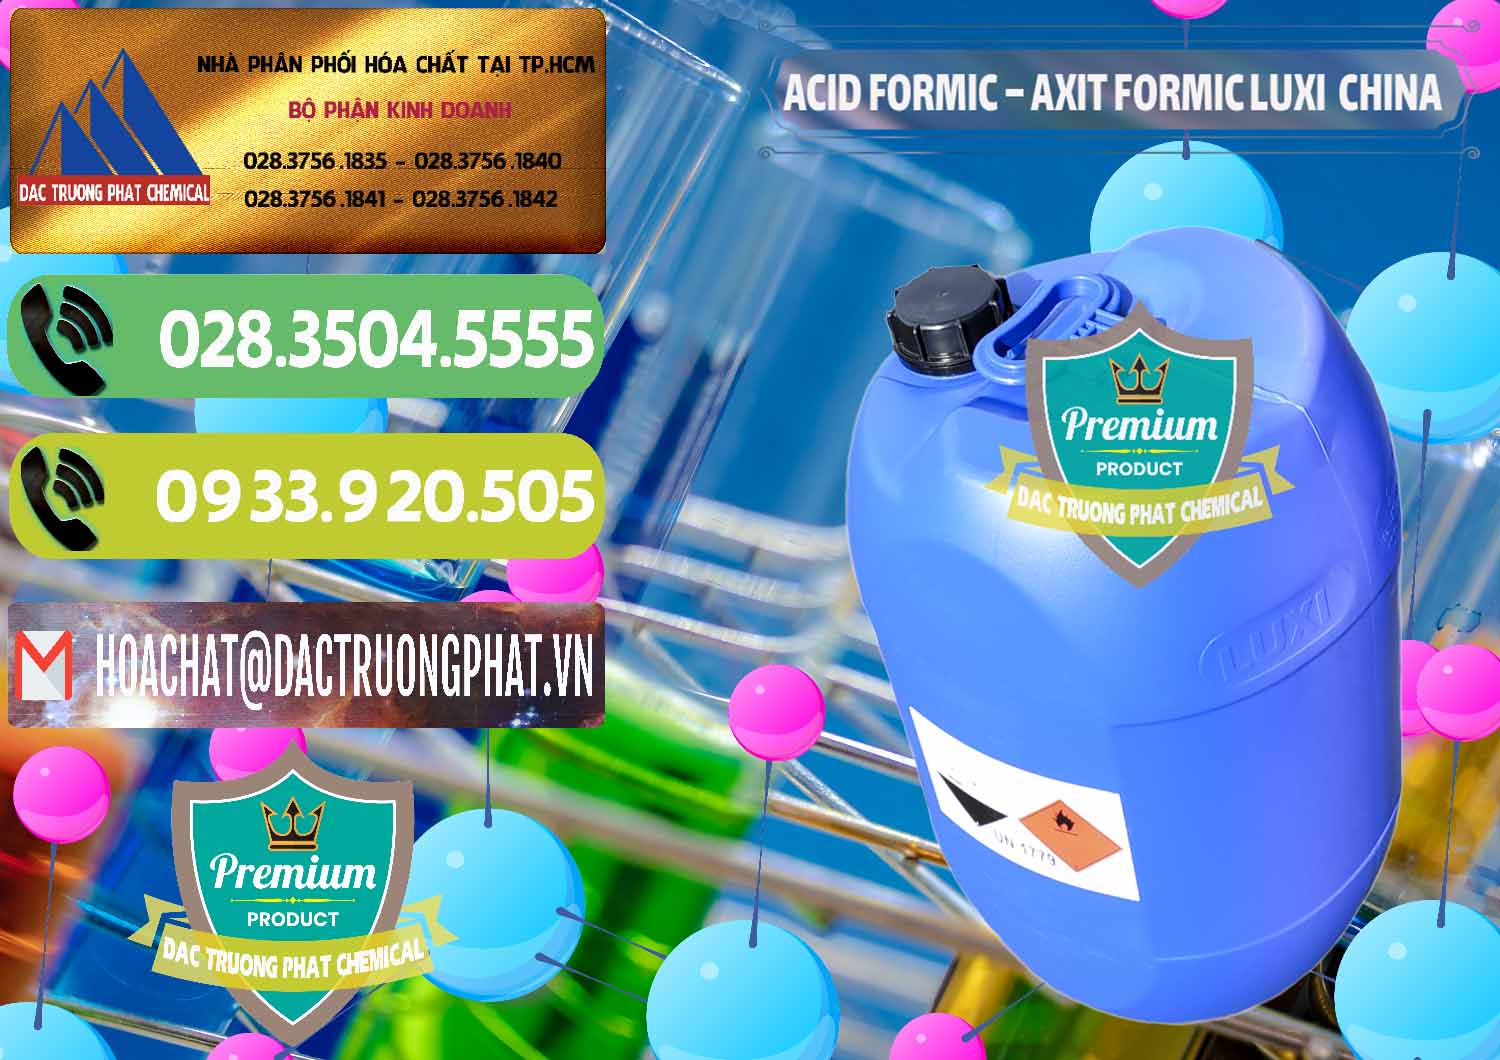 Cty cung cấp ( bán ) Acid Formic - Axit Formic Luxi Trung Quốc China - 0029 - Cty chuyên bán - phân phối hóa chất tại TP.HCM - hoachatmientay.vn